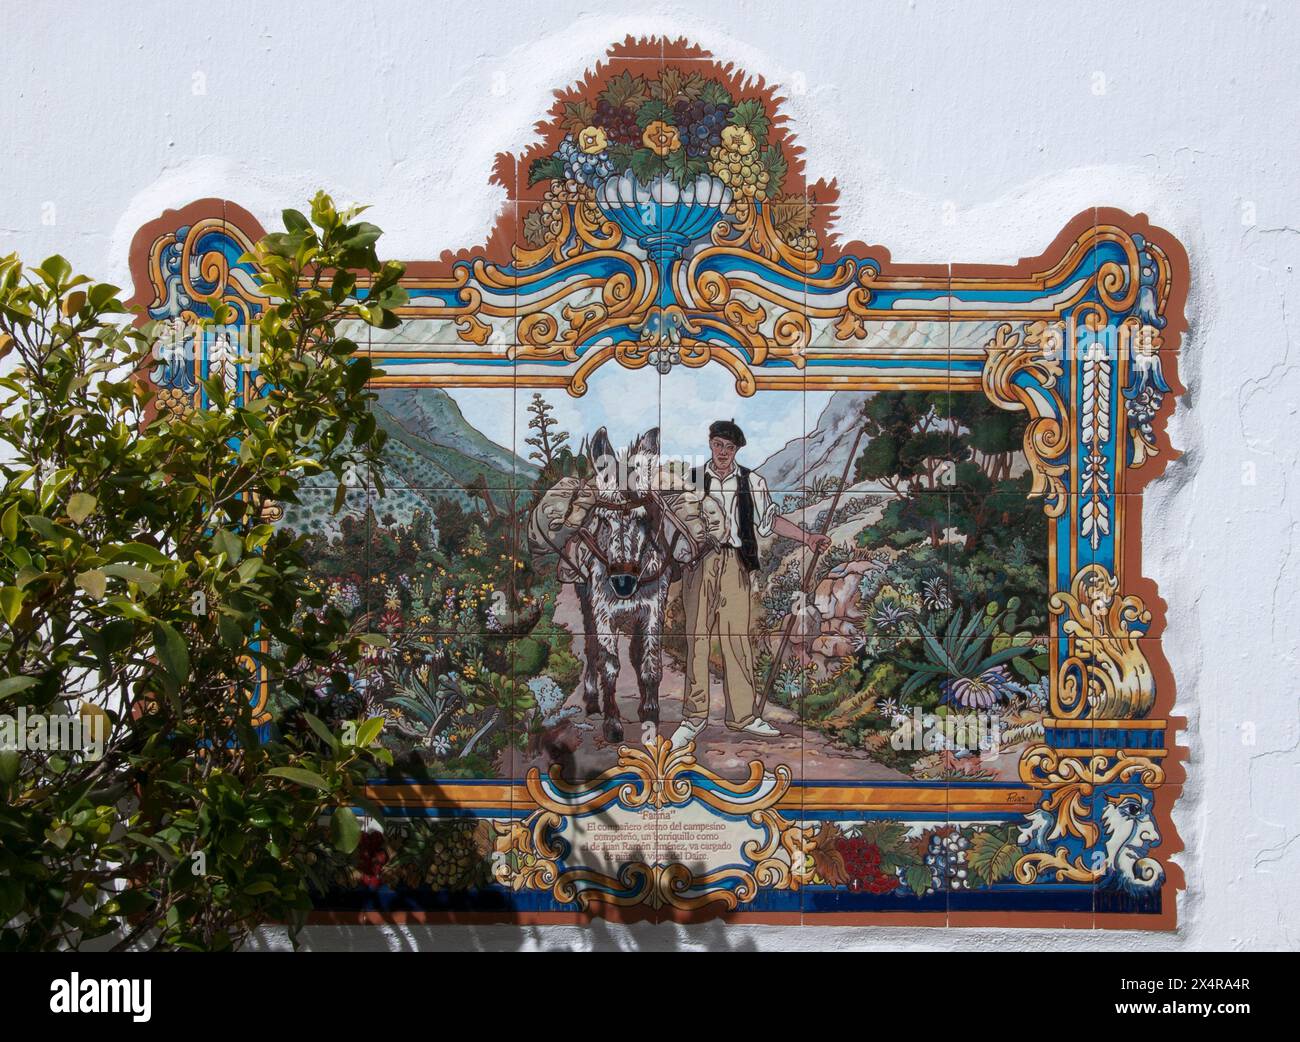 Azulejo décoratif ou carrelage émaillé illustre l'histoire et le patrimoine du 'Village Blanc' de Competa, Andalousie, Espagne Banque D'Images